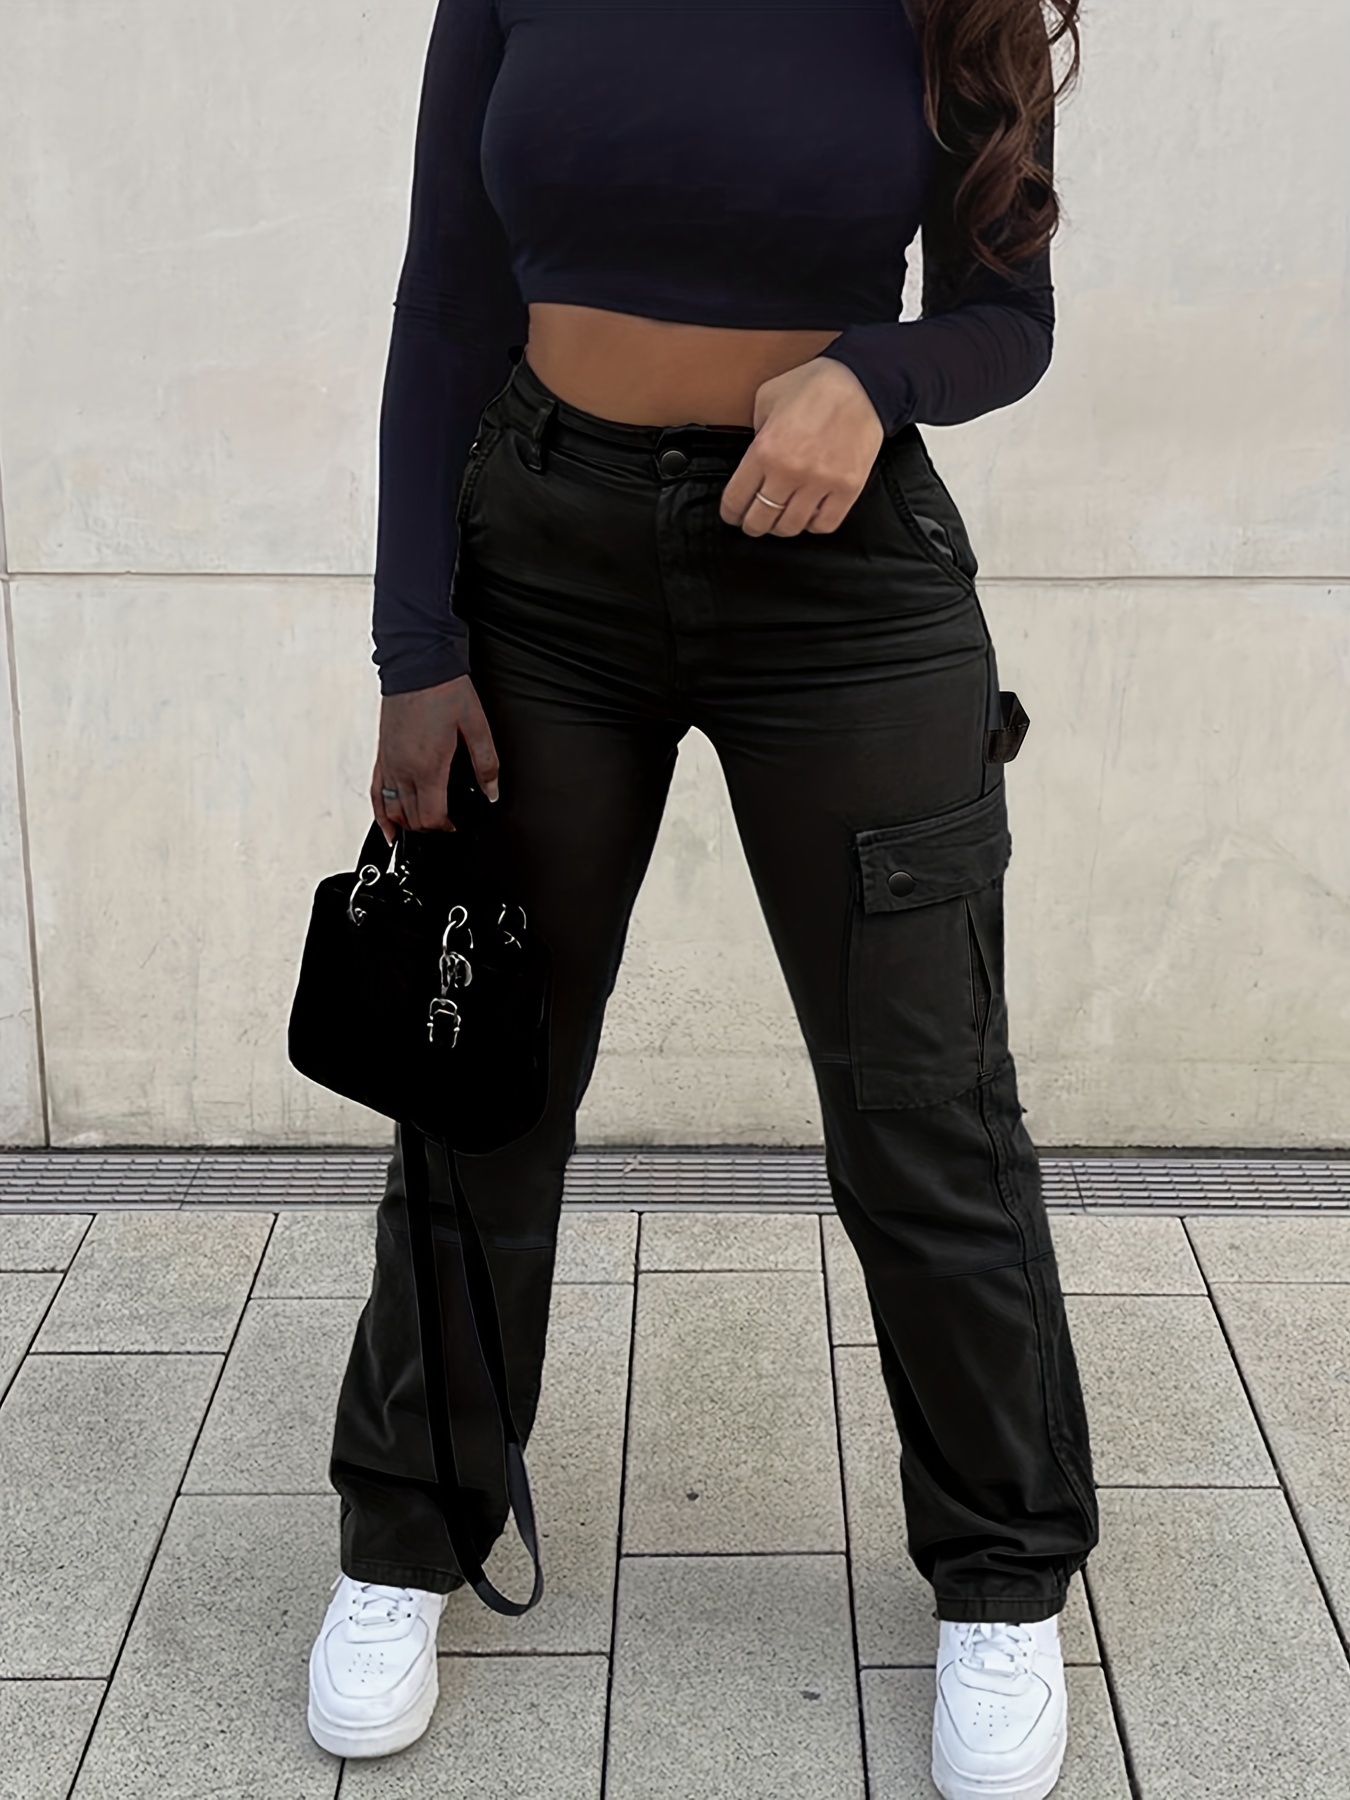 Body Glove Sportswear Women's Cargo Pant in Black